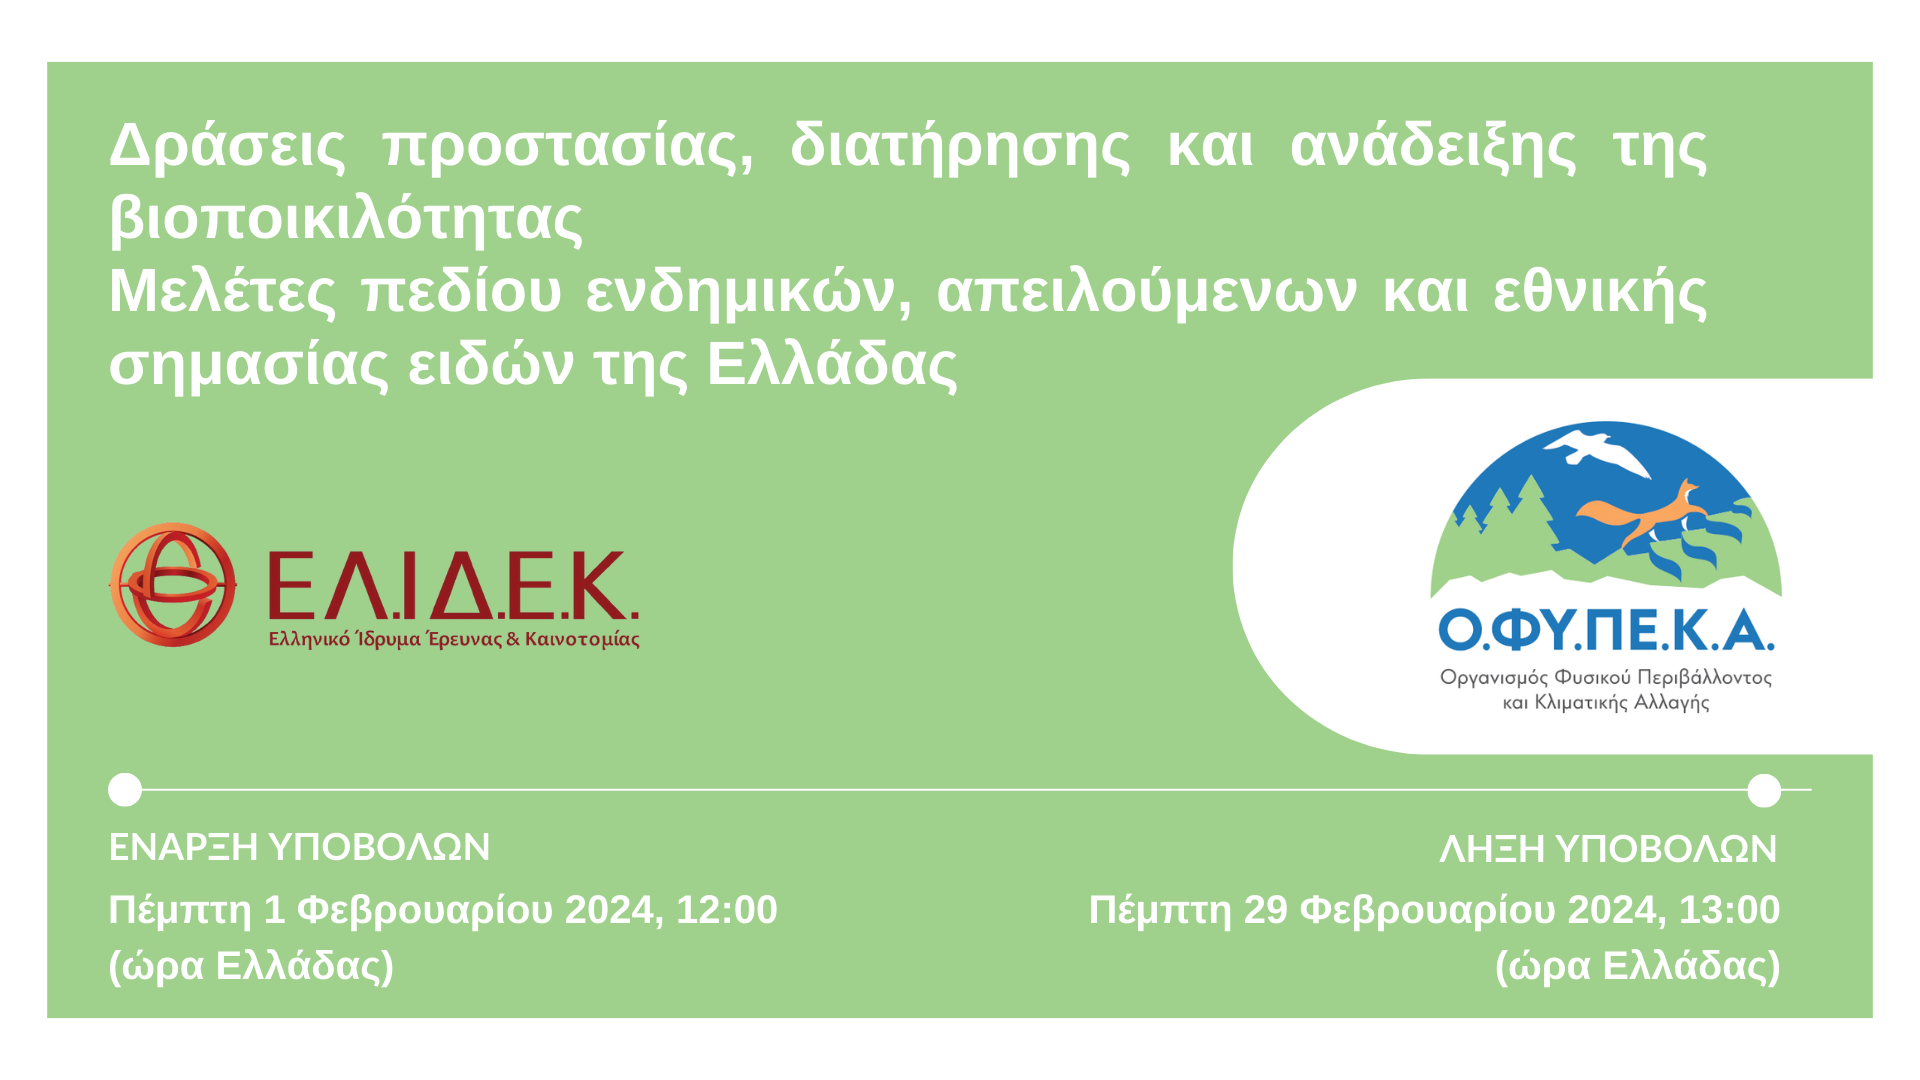 2η Προκήρυξη «Δράσεις προστασίας, διατήρησης και ανάδειξης της βιοποικιλότητας. Μελέτες πεδίου ενδημικών, απειλούμενων και εθνικής σημασίας ειδών της Ελλάδας»